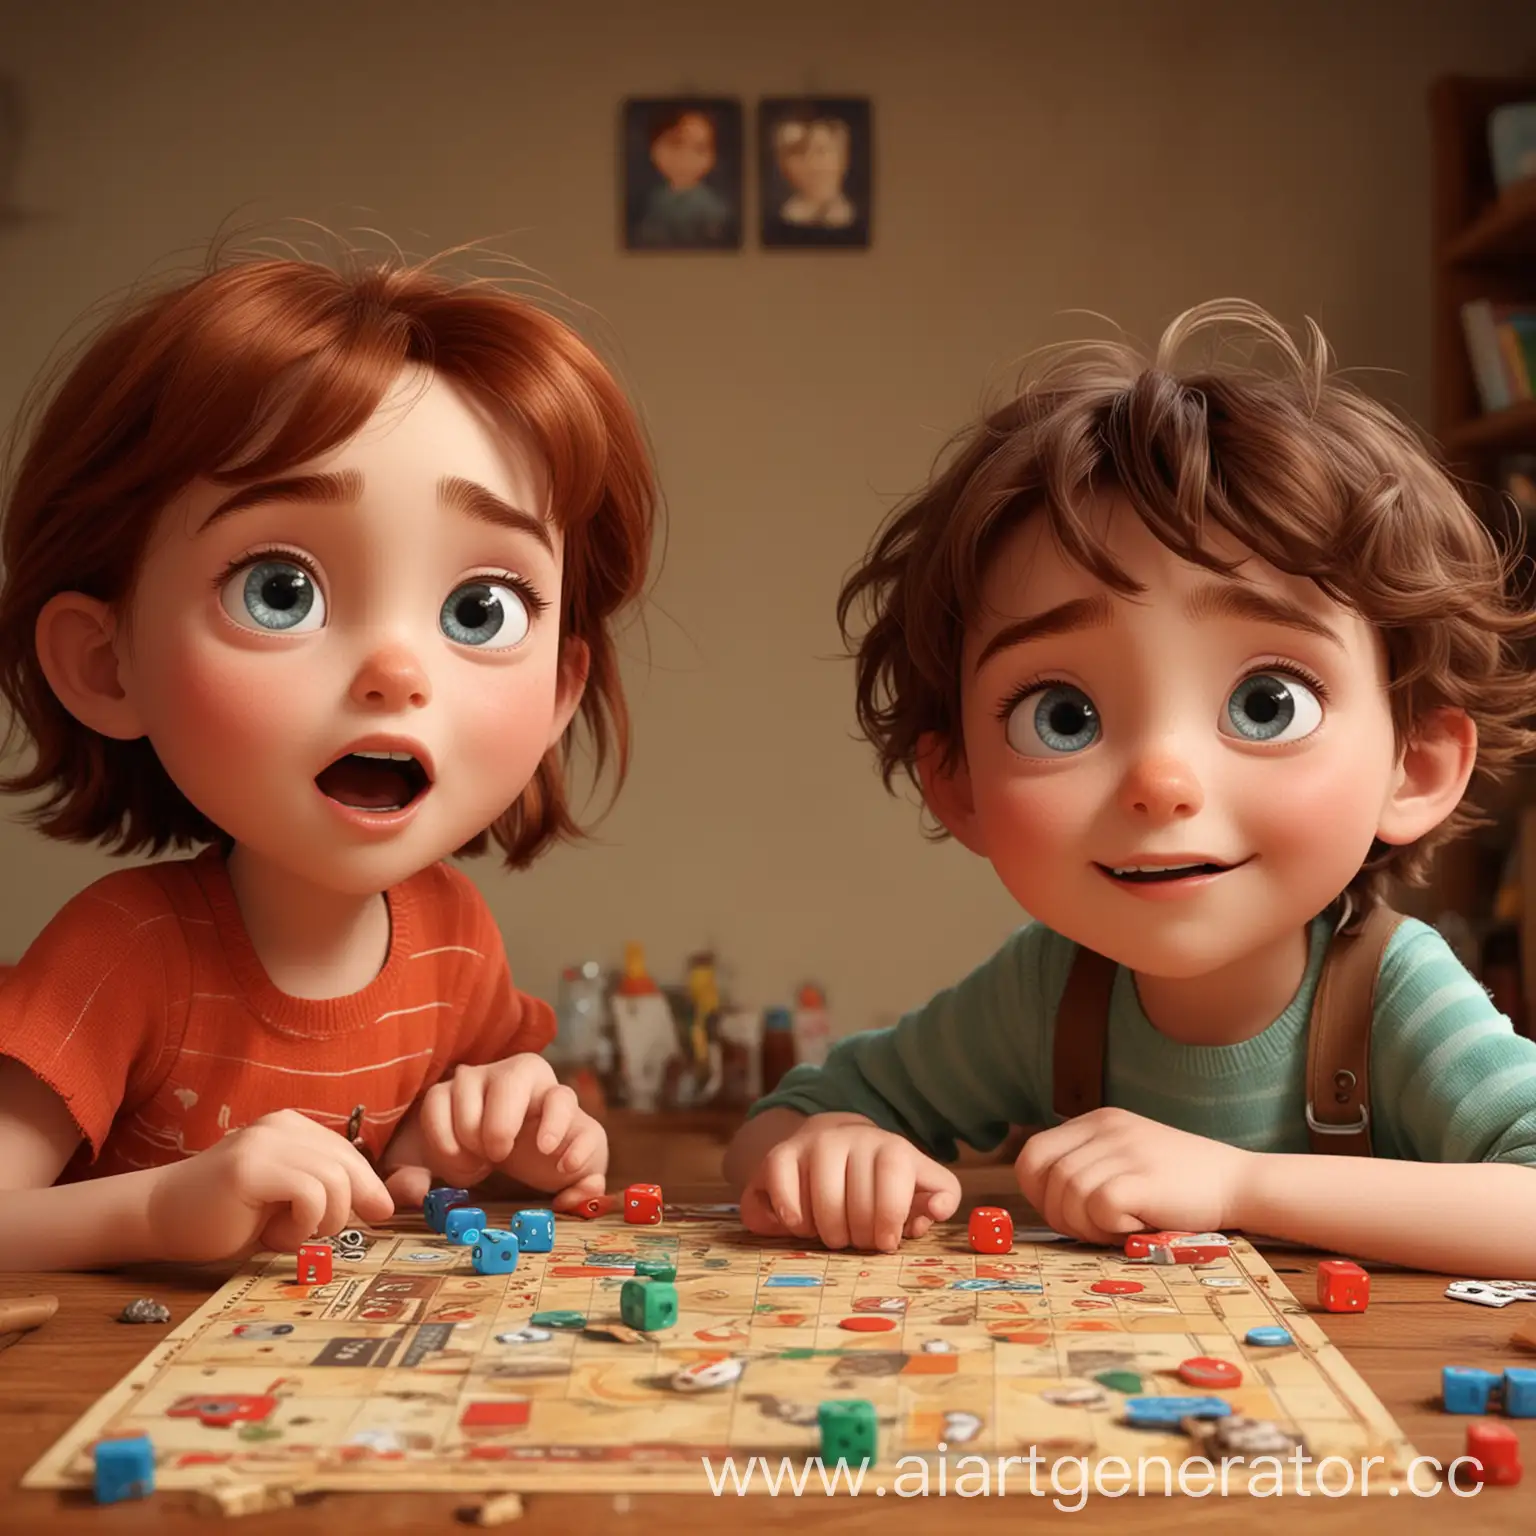 я хочу, чтобы вы нарисовали двух детей, которые играют в настольную игру, лица у детей выразительные, красивые глаза, дети рады им интересно играть. Картинка в стиле Pixar